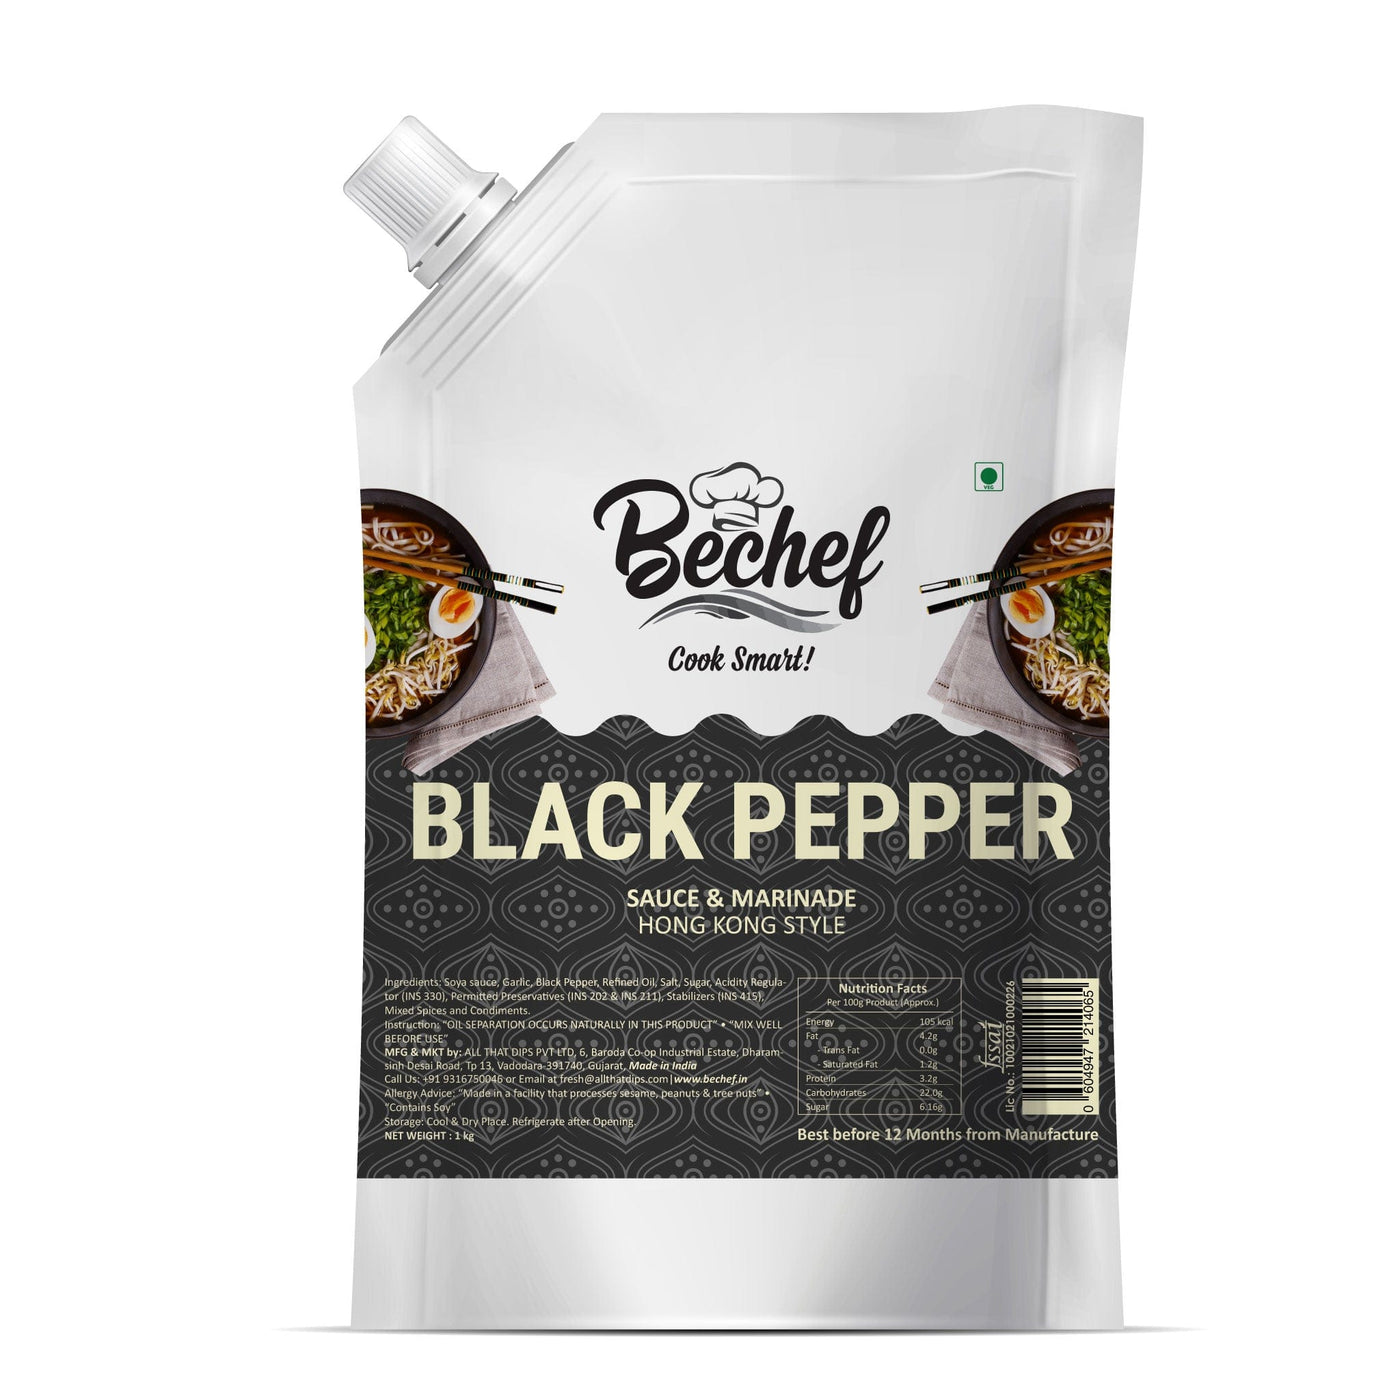 Black Pepper Sauce : Hong Kong Cuisine: 1 Kg : Bulk Pack Horeca - Bechef - Gourmet Pantry Essentials